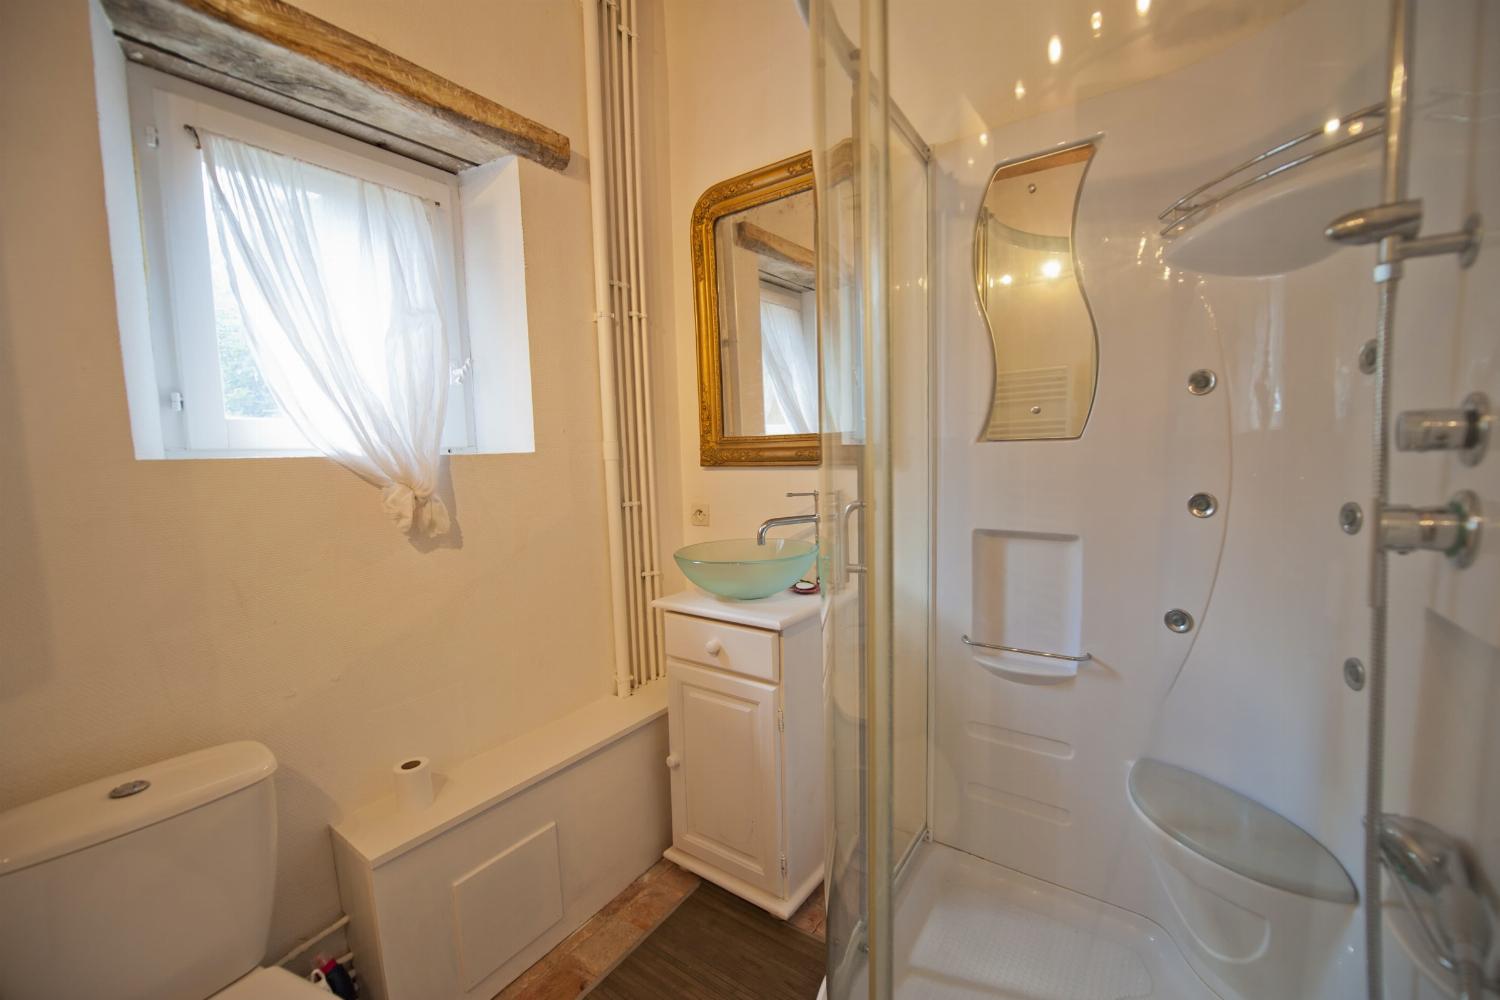 Bathroom | Rental home in Loire